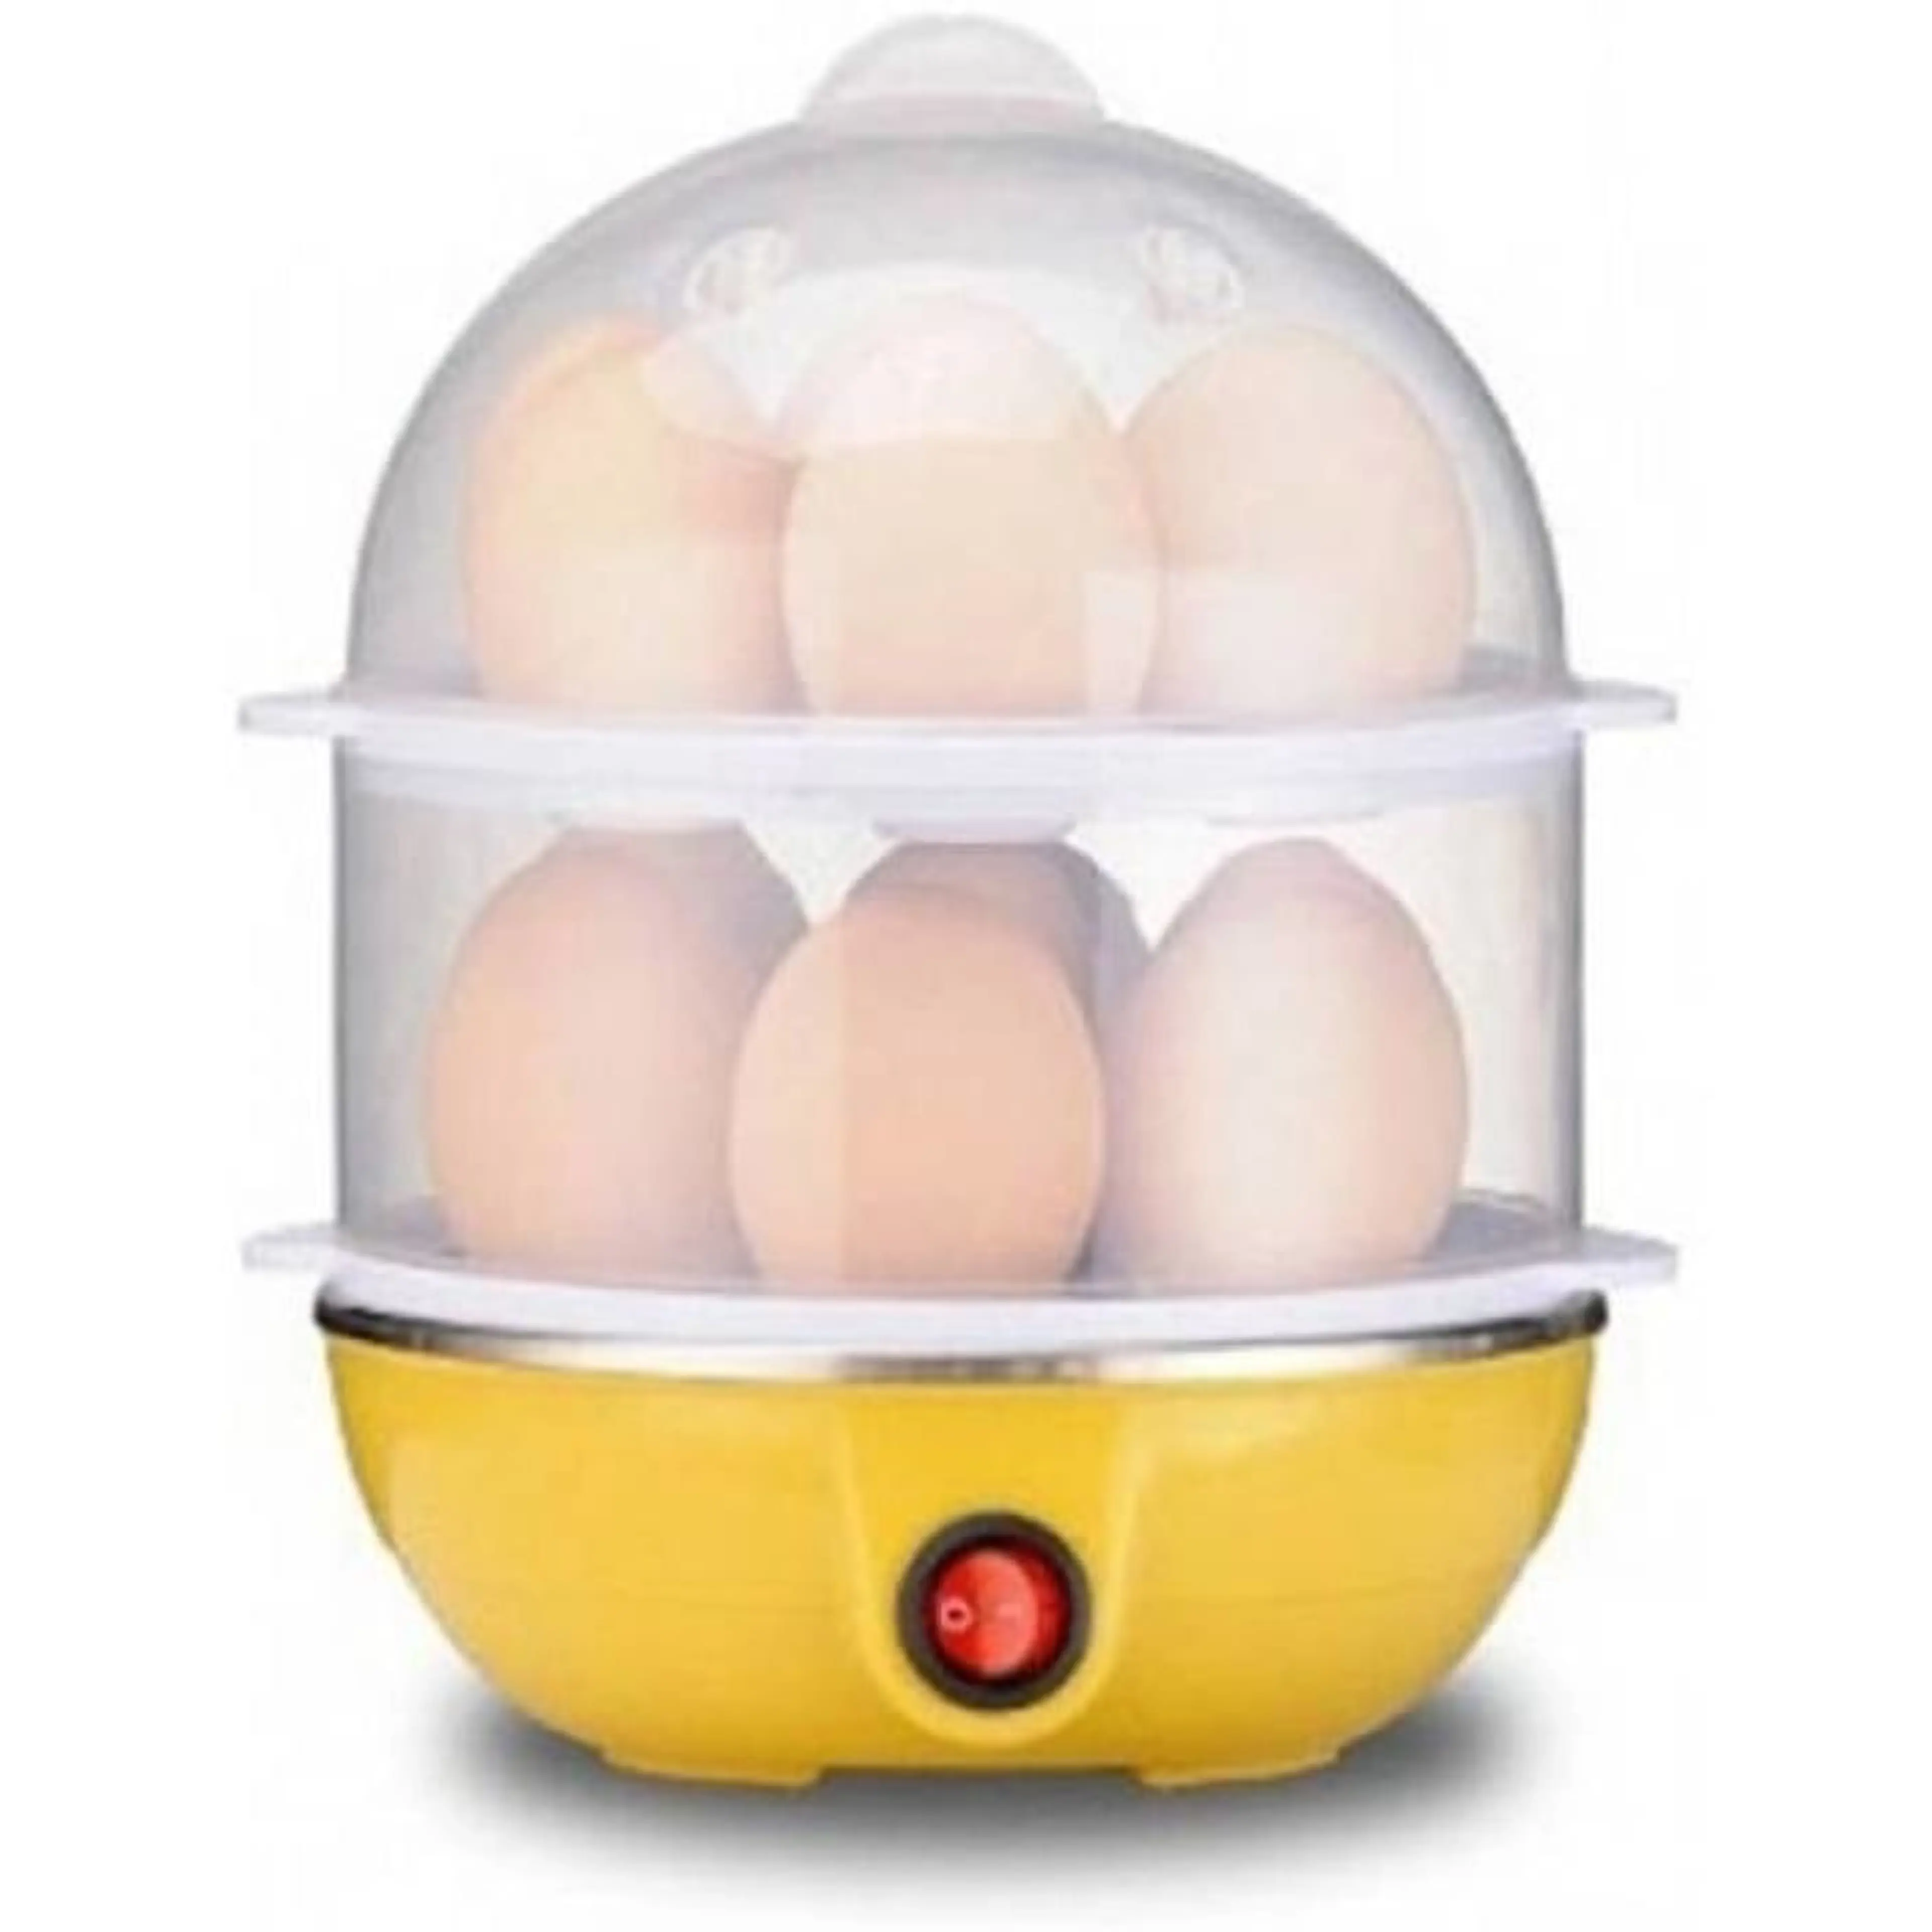 Яйцеварка, Уред за готвене на пара, за 14 яйца